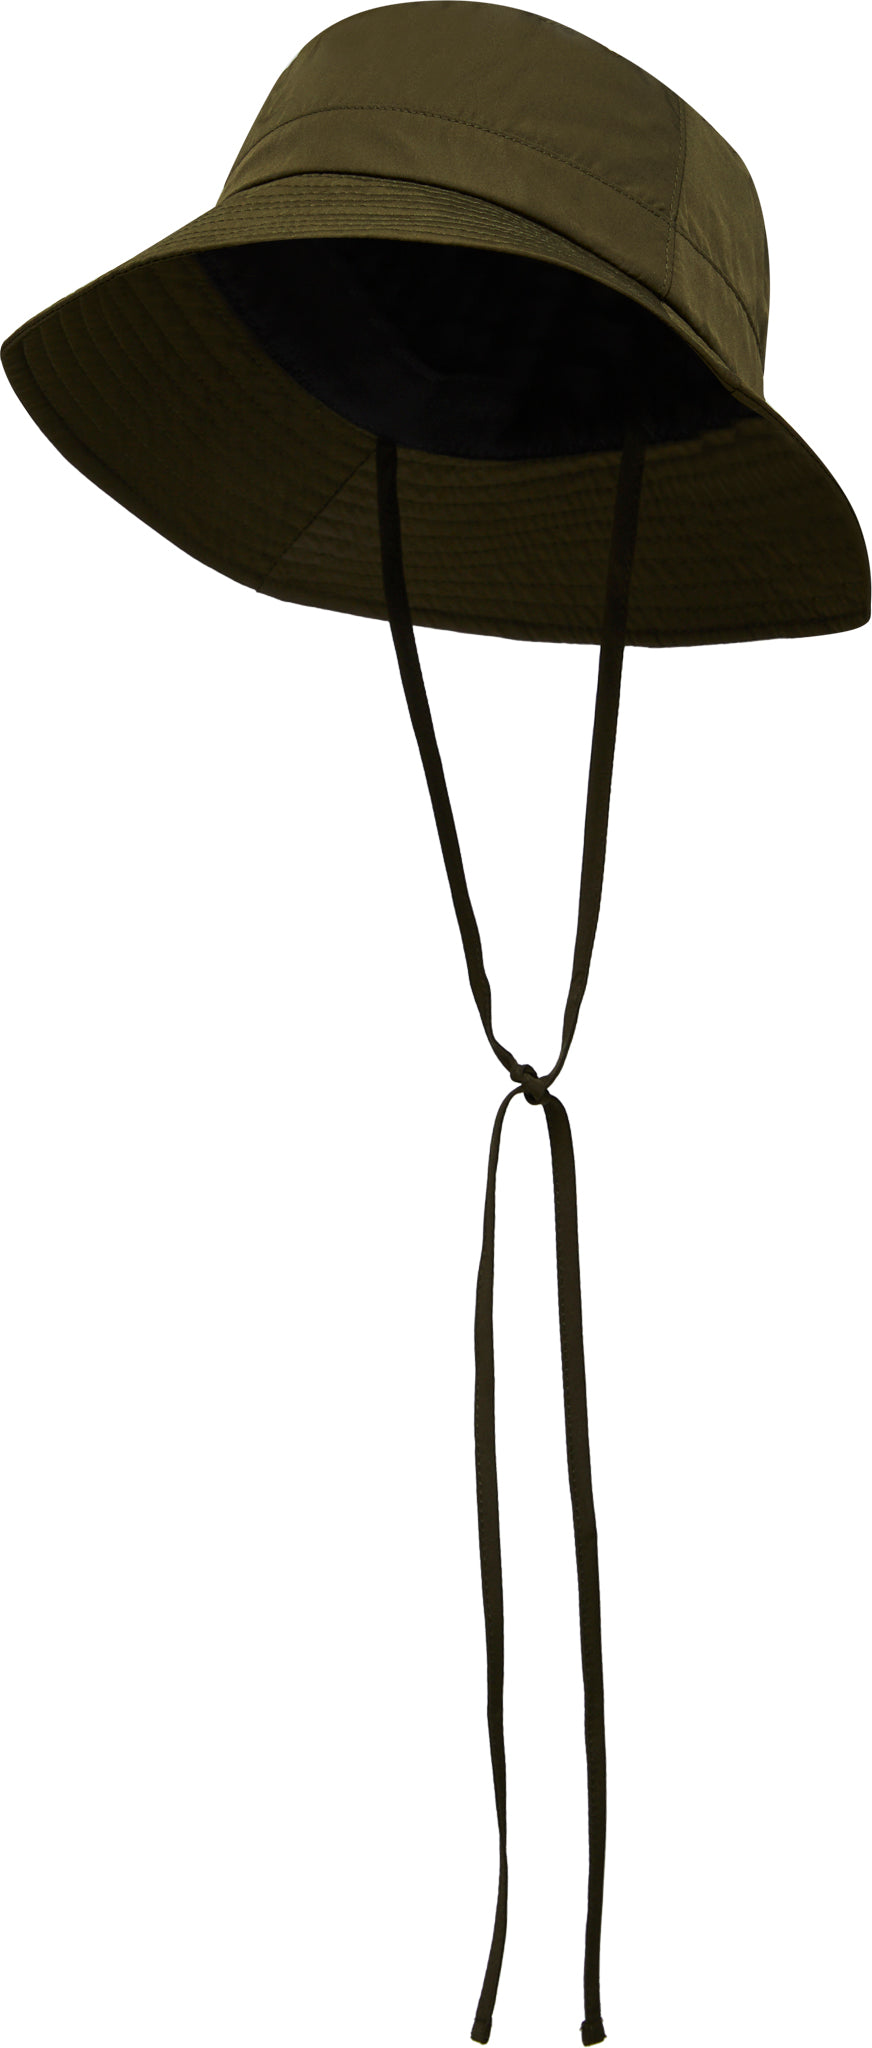 Canadian Hat Bolsla Large Bucket Hat - Unisex